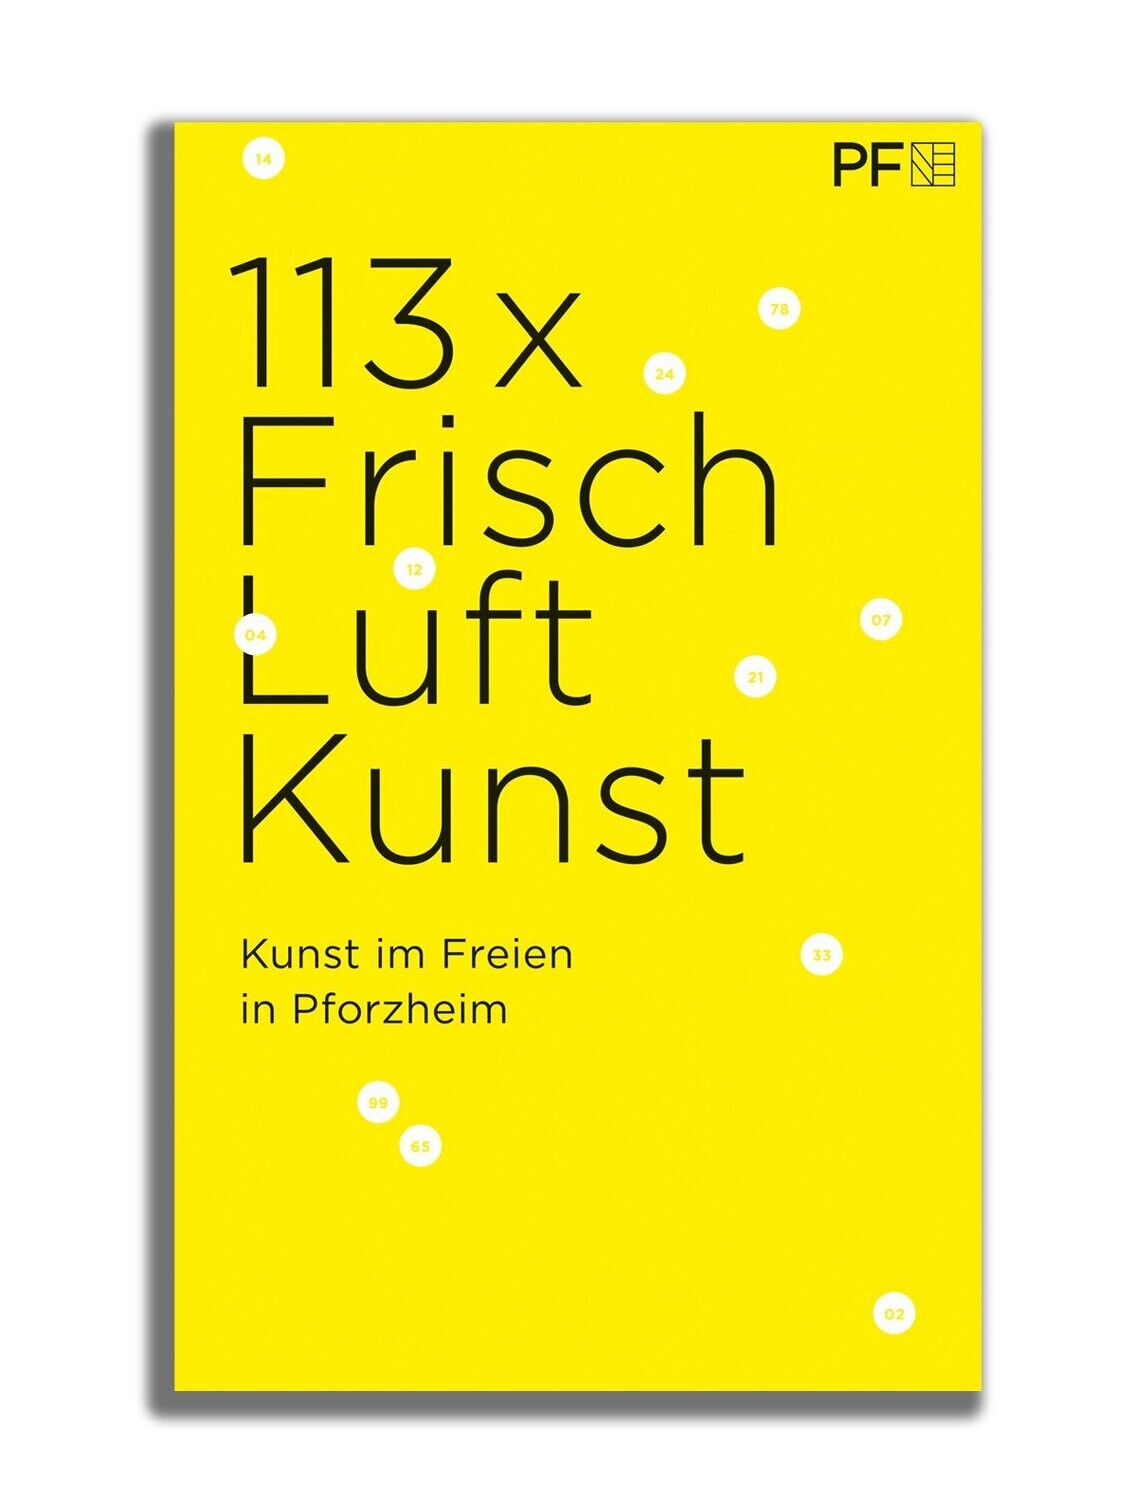 113 x Frisch Luft Kunst